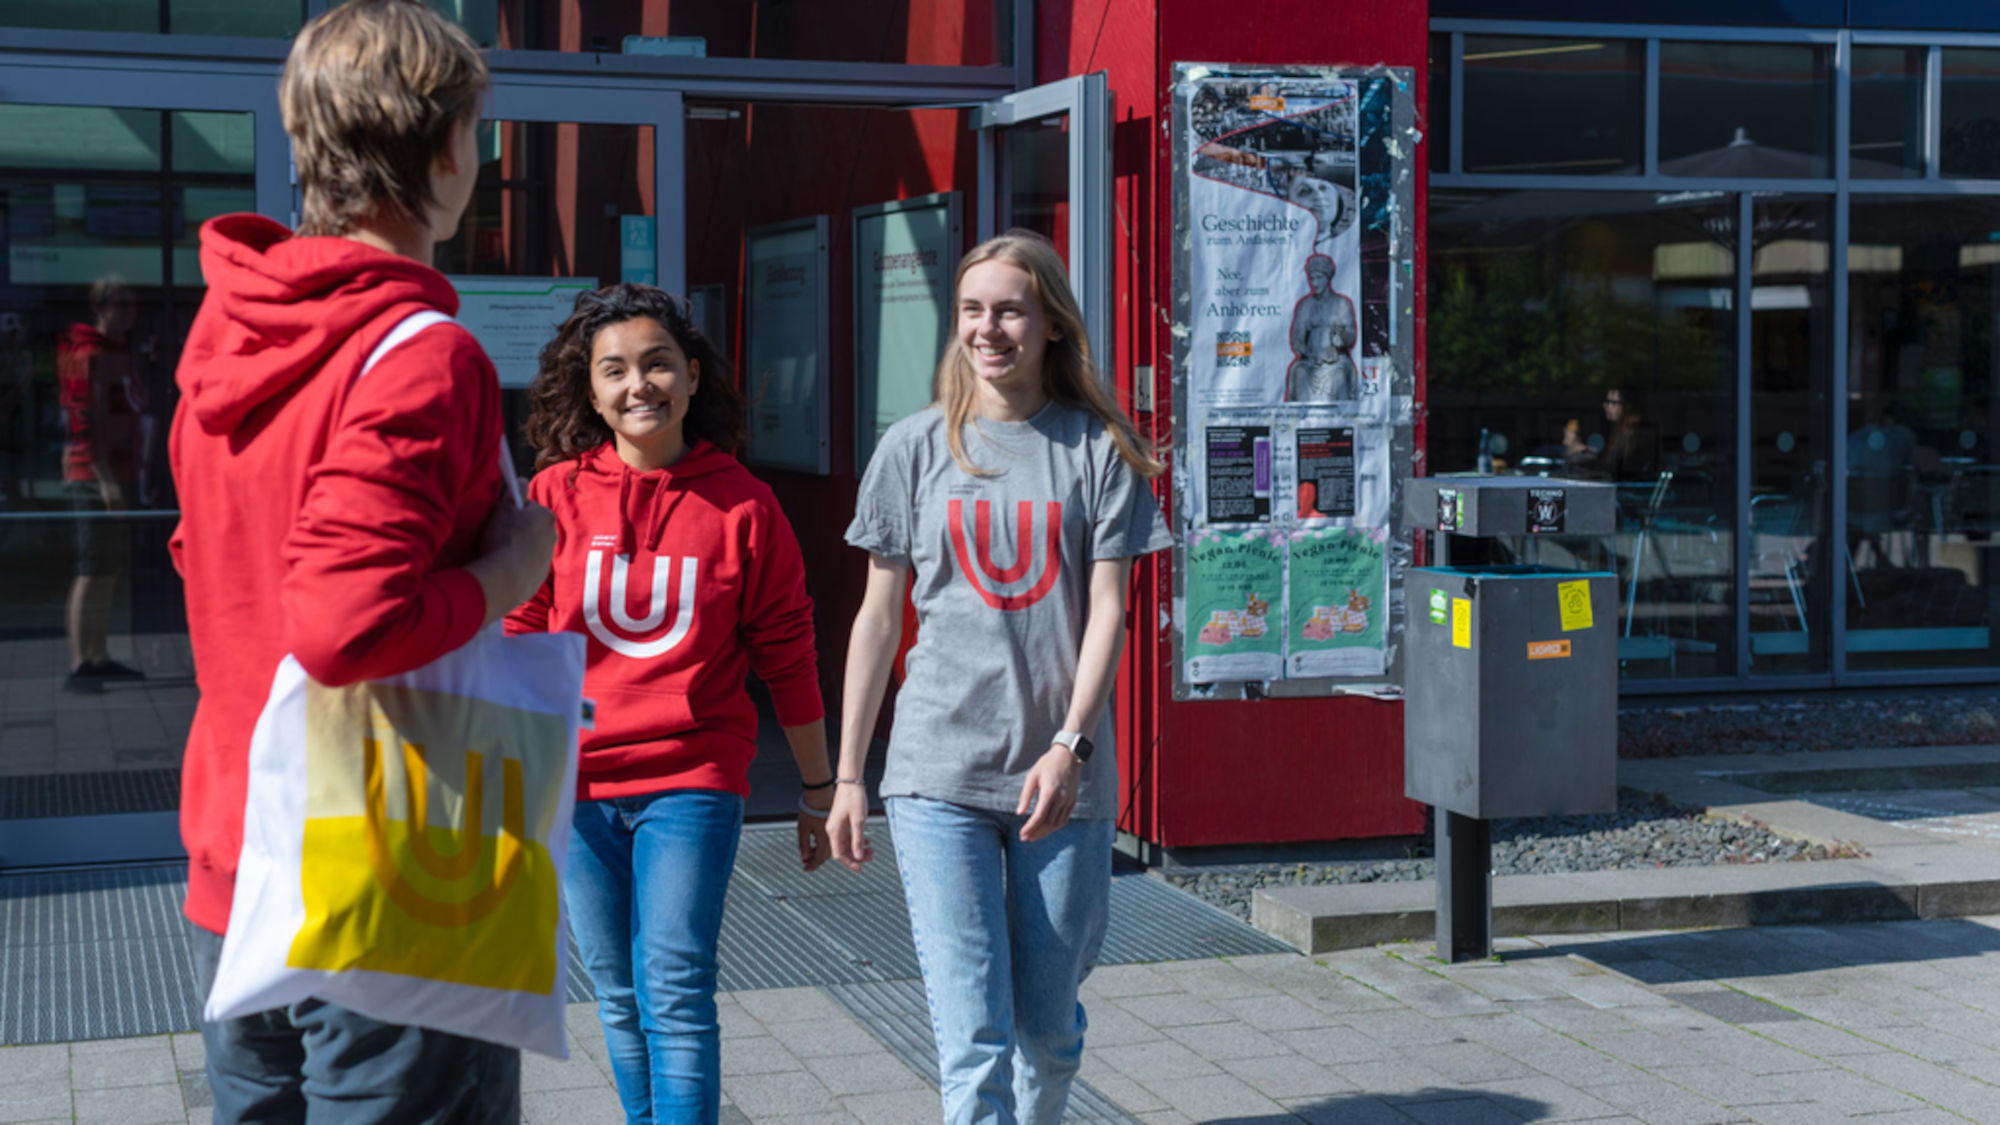 Ein junger Mann steht vor der Uni Mensa, über der Schulter hängt ein Jutebeutel mit dem Uni Bremen Logo. Er begrüßt zwei Studentinnen, die aus der Mensa kommen.